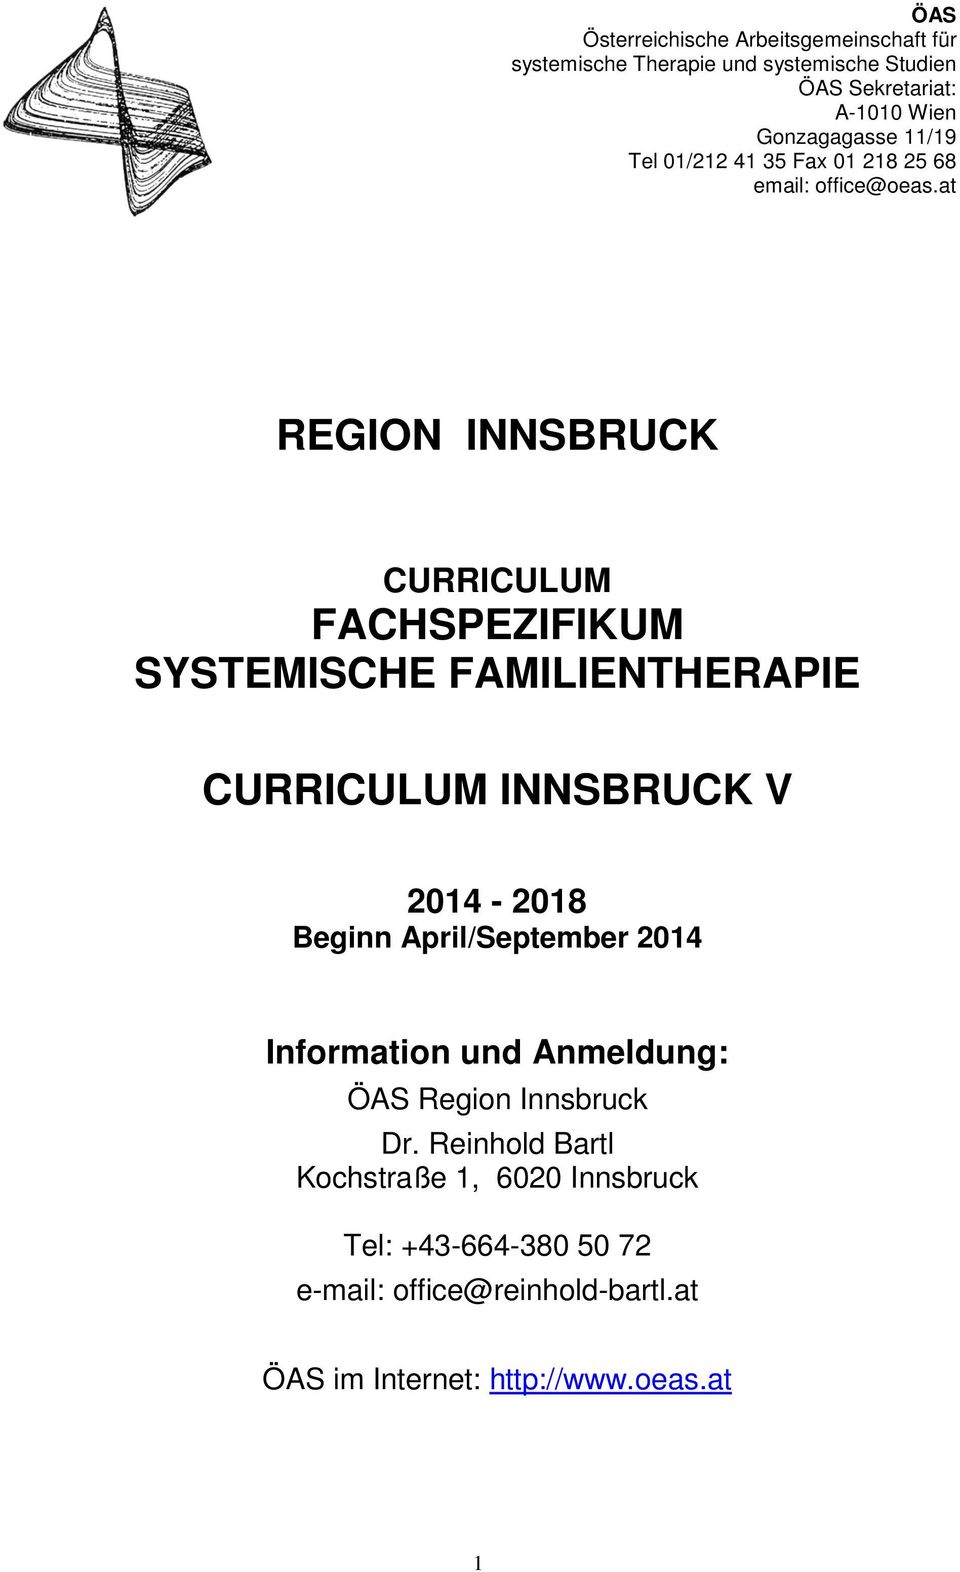 at REGION INNSBRUCK CURRICULUM FACHSPEZIFIKUM SYSTEMISCHE FAMILIENTHERAPIE CURRICULUM INNSBRUCK V 2014-2018 Beginn